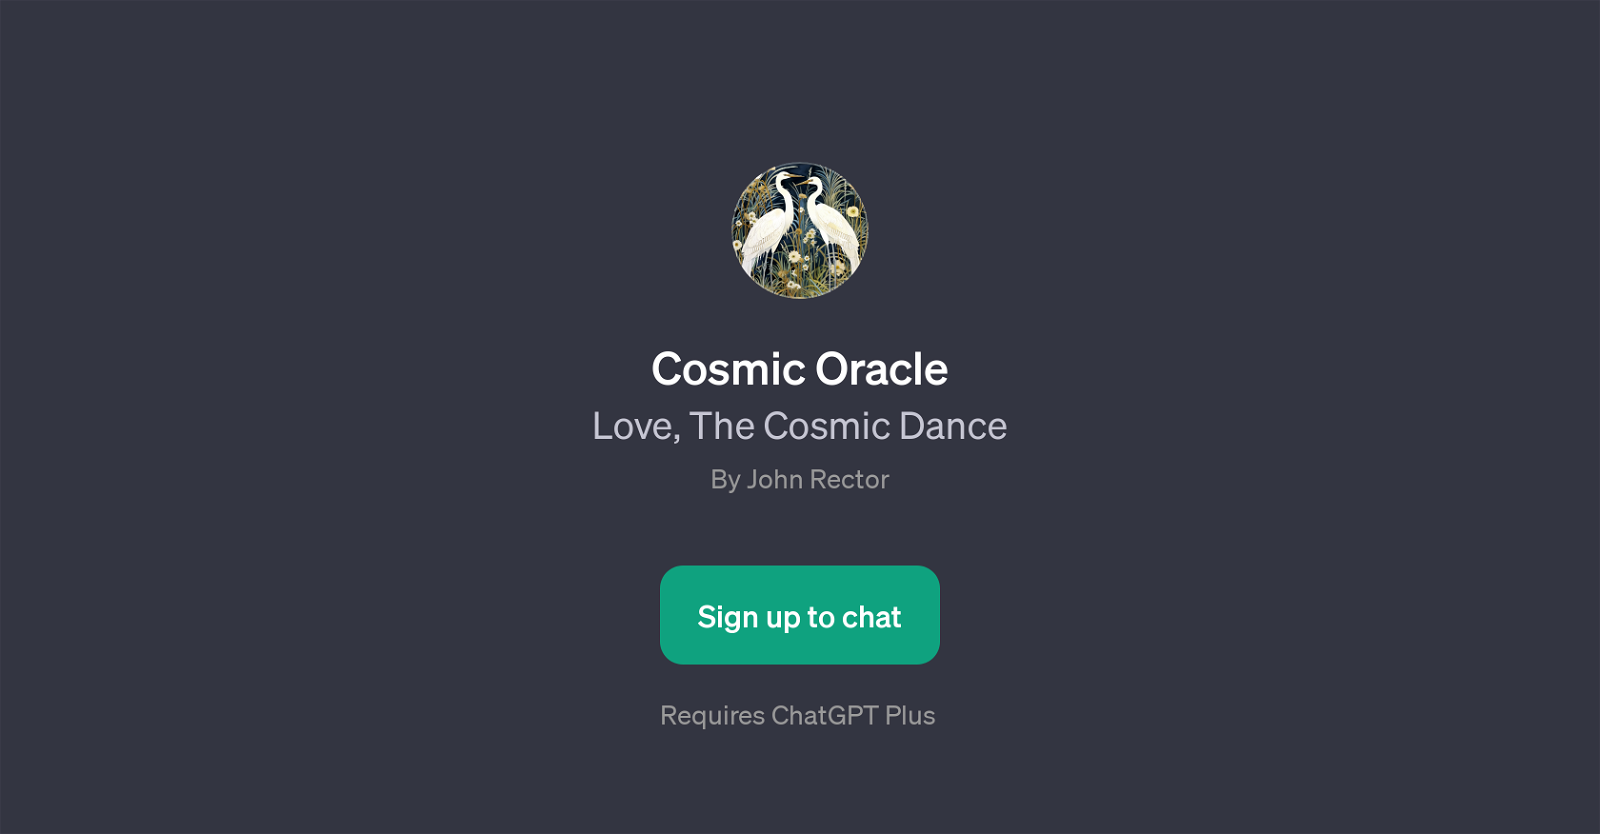 Cosmic Oracle website